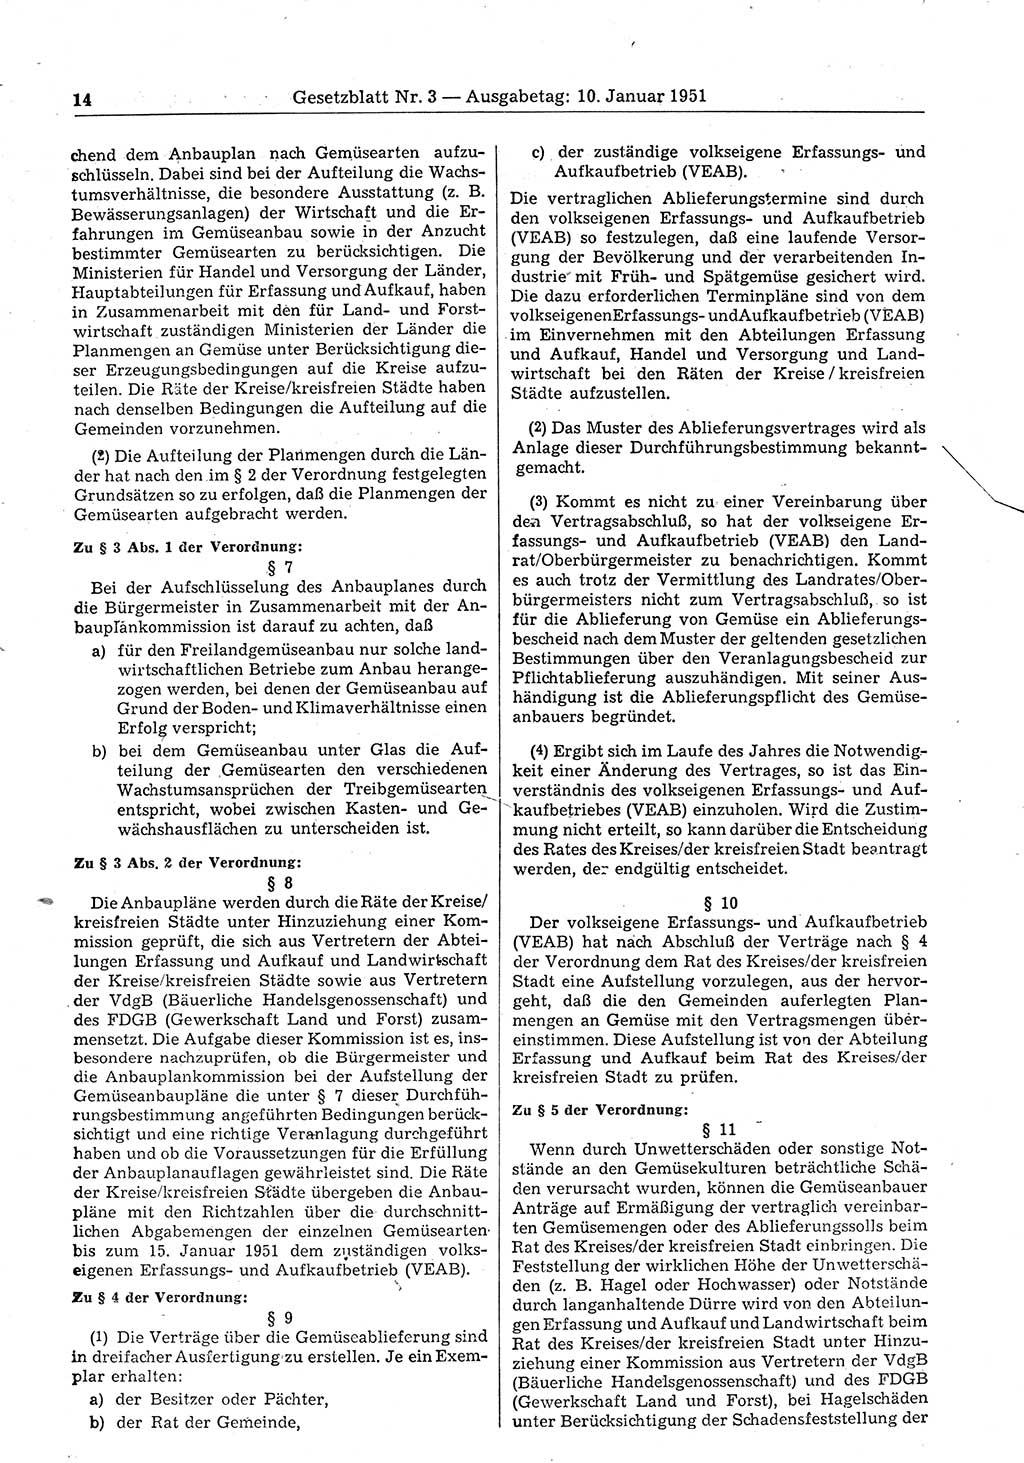 Gesetzblatt (GBl.) der Deutschen Demokratischen Republik (DDR) 1951, Seite 14 (GBl. DDR 1951, S. 14)